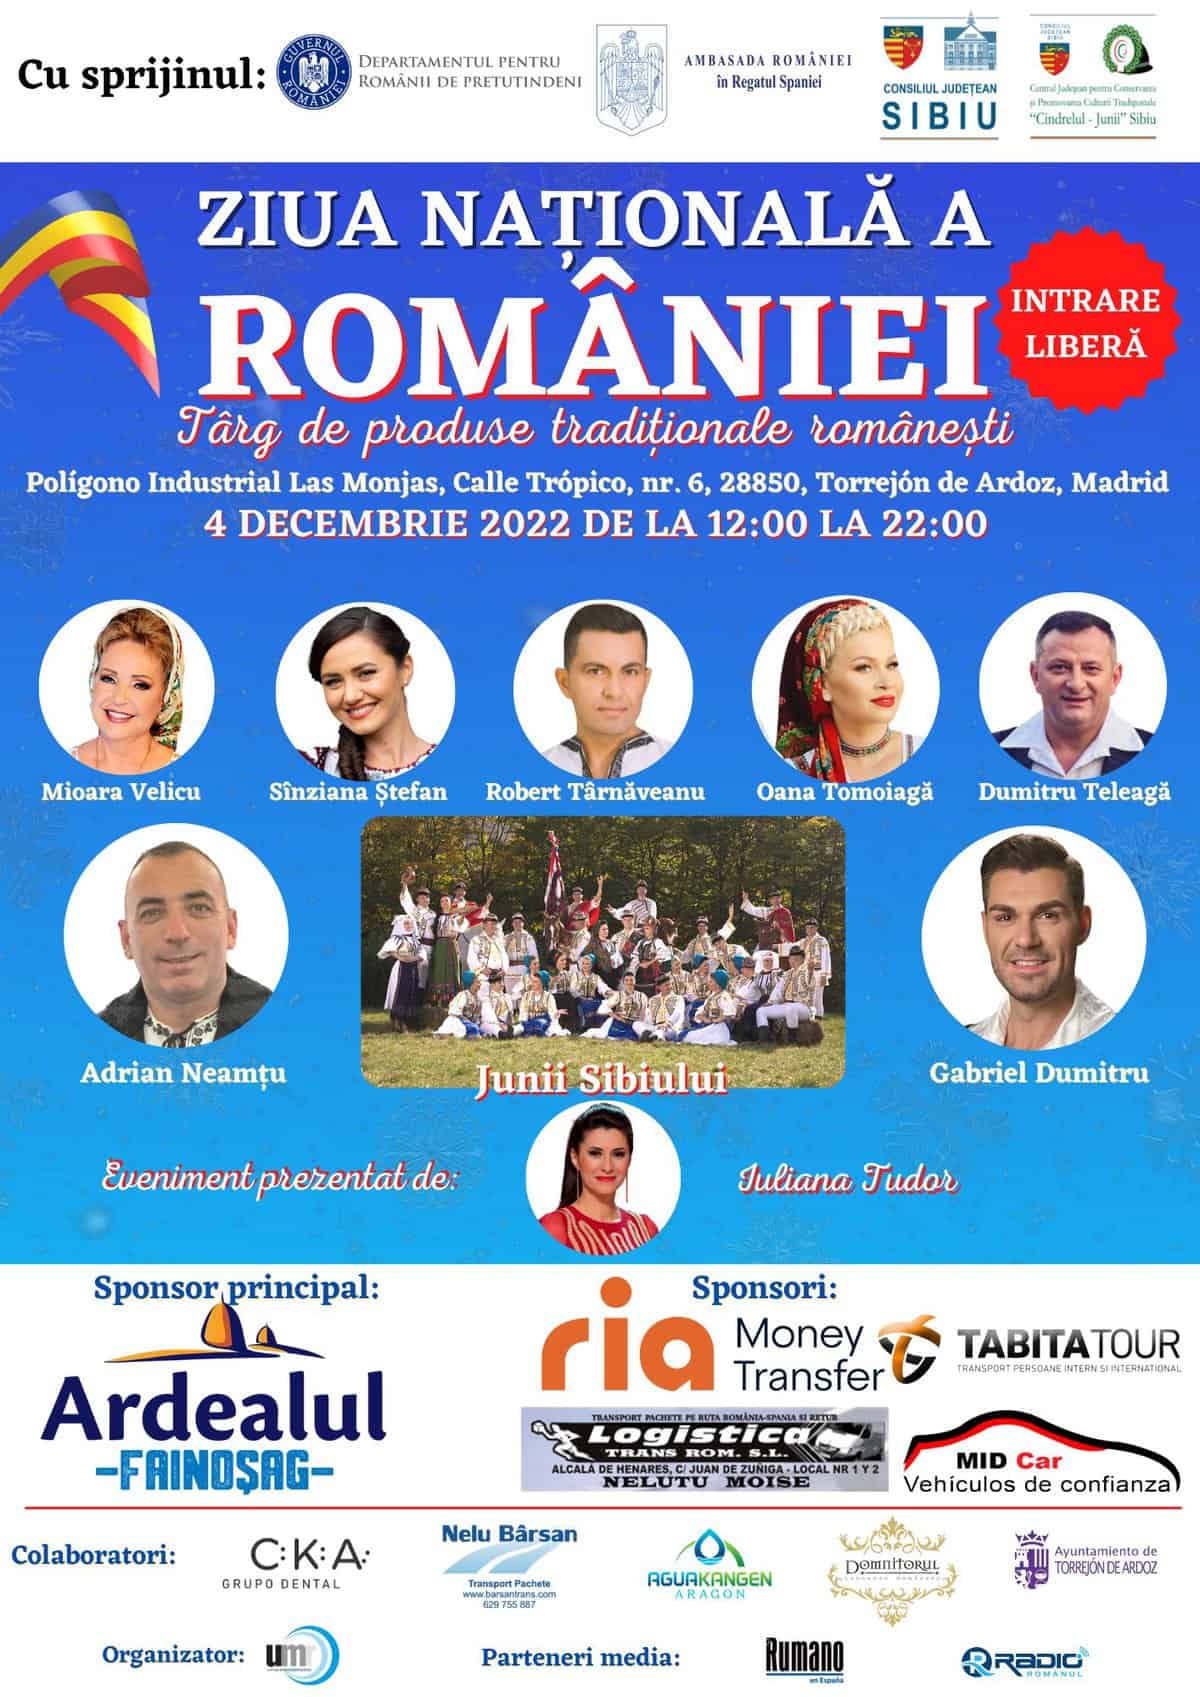 junii sibiului sărbătoresc 1 decembrie alături de românii din spania